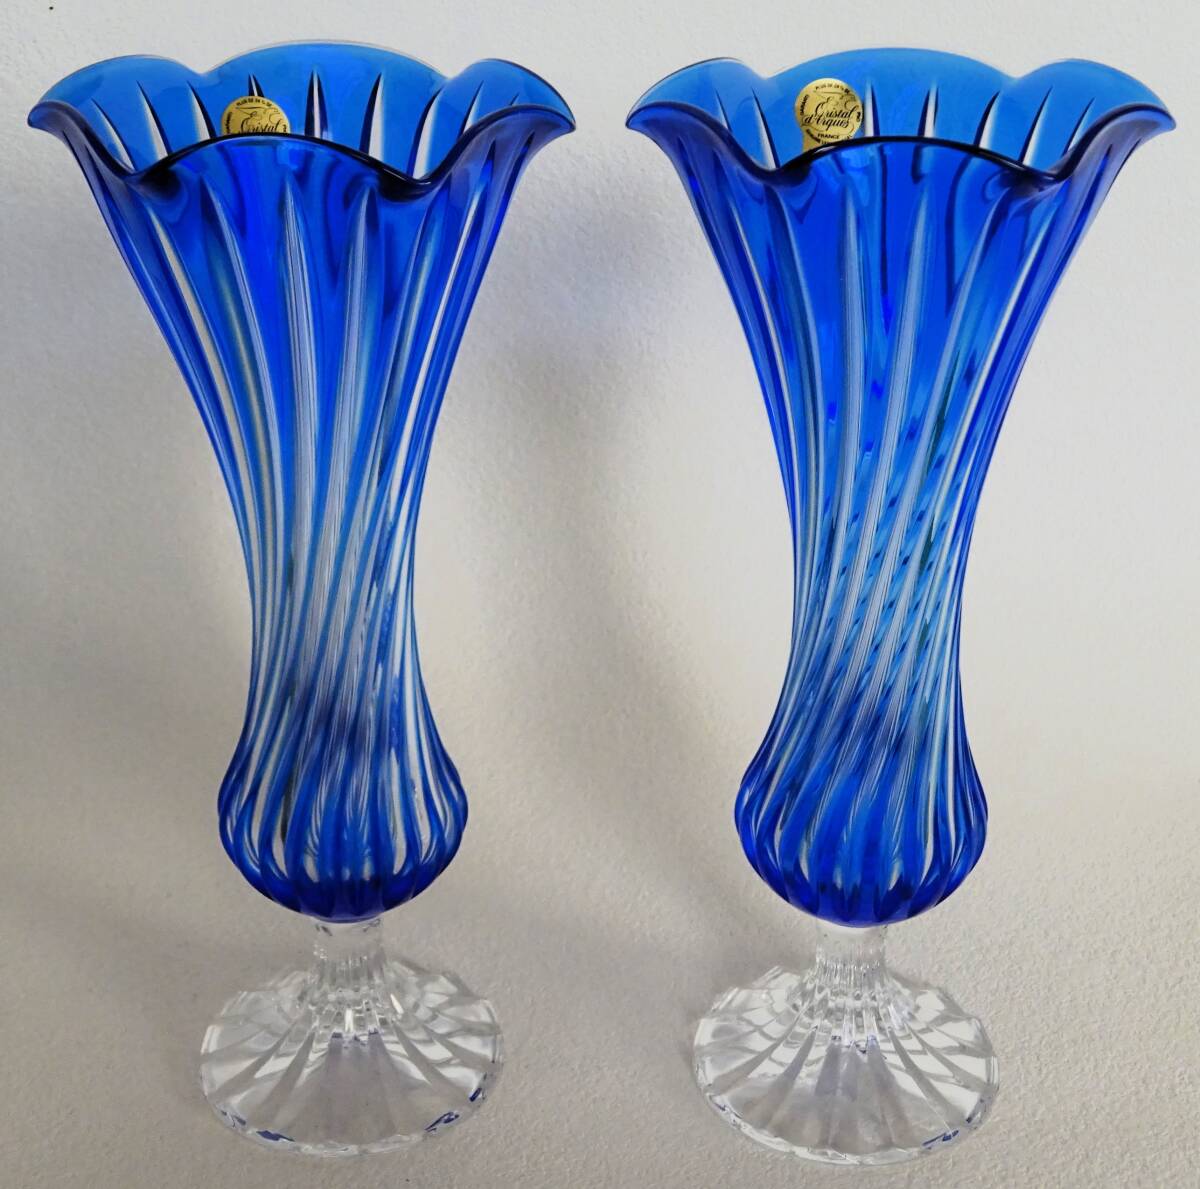 ◆クリスタルダルク ガラス花瓶セット◆Cristal D'Arques 洋ガラス フラワーベース 切子の画像2